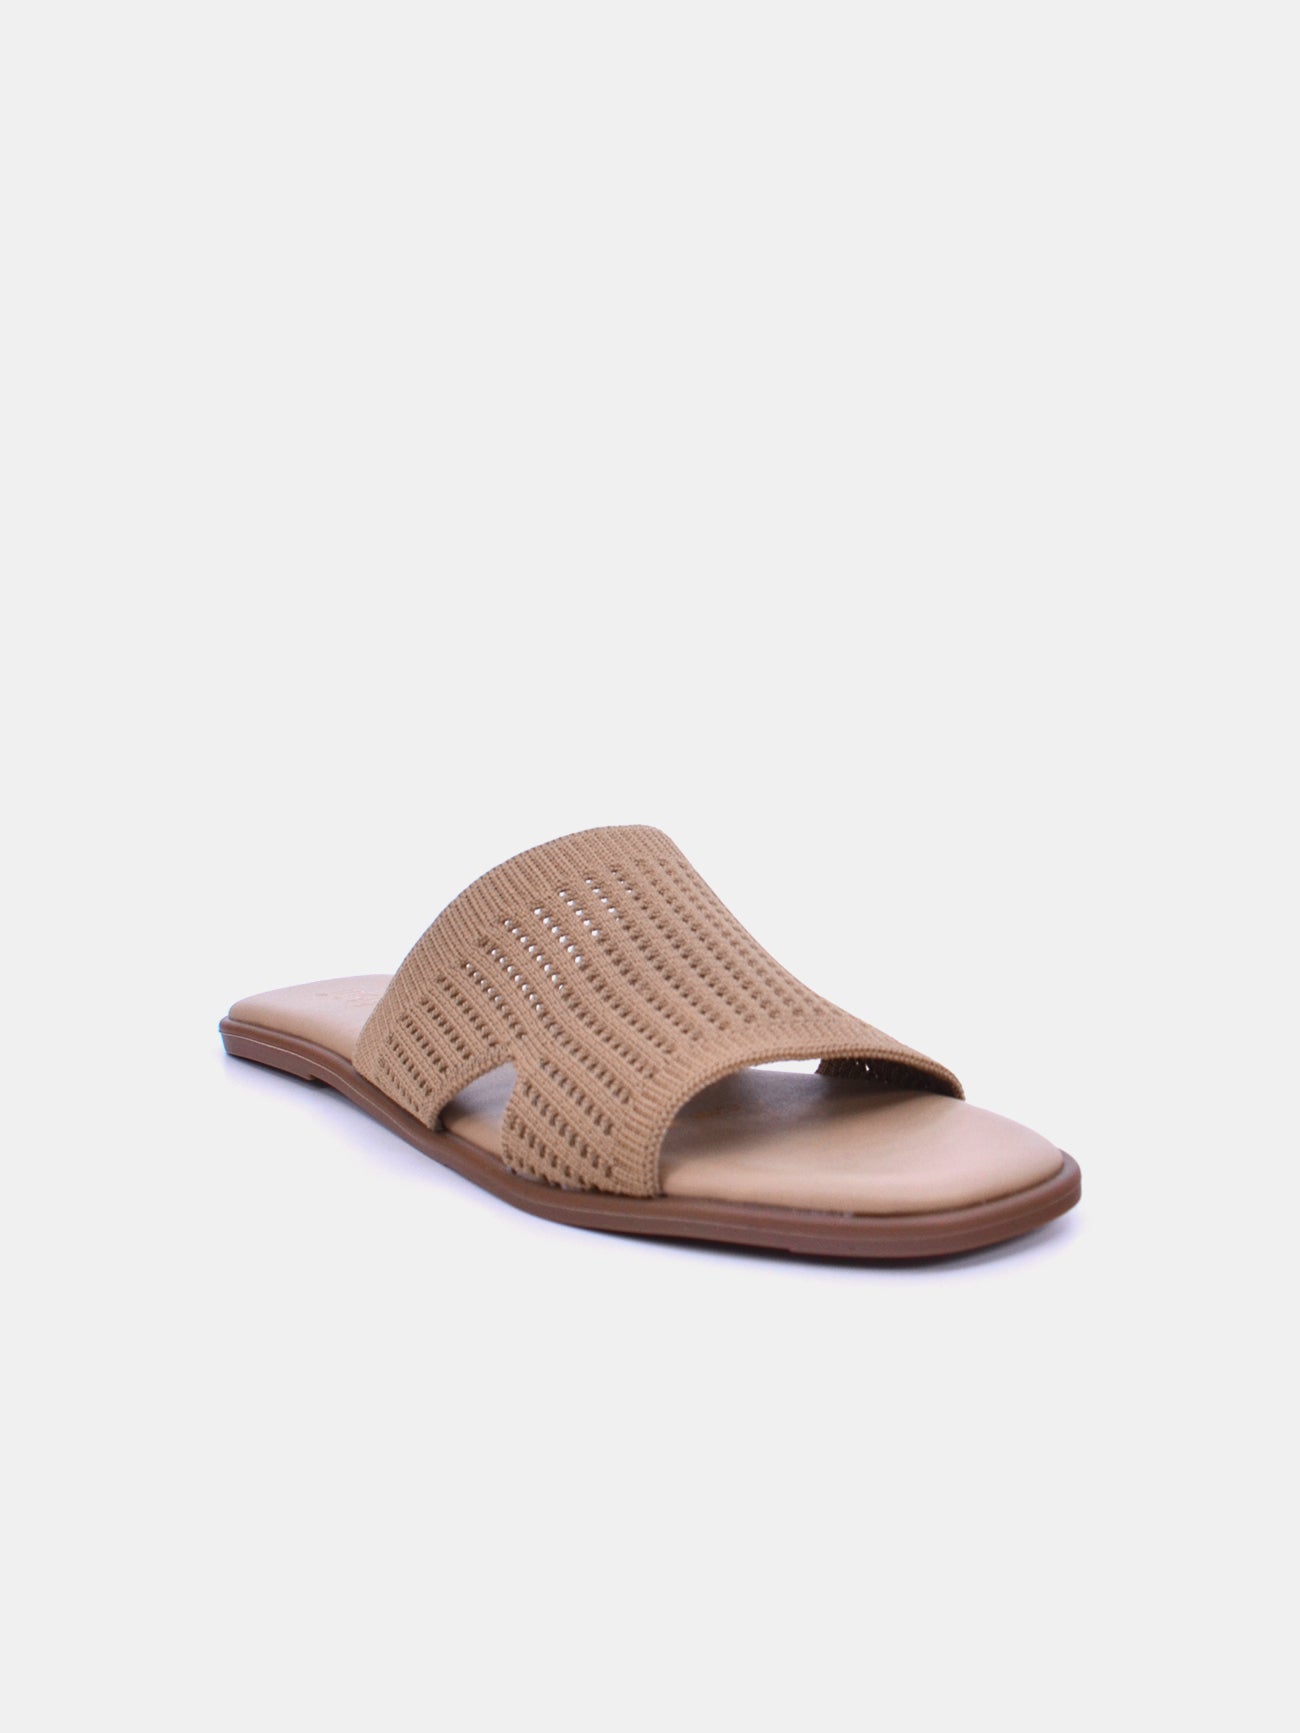 Michelle Morgan 114RJ10H Women's Flat Sandals #color_Beige